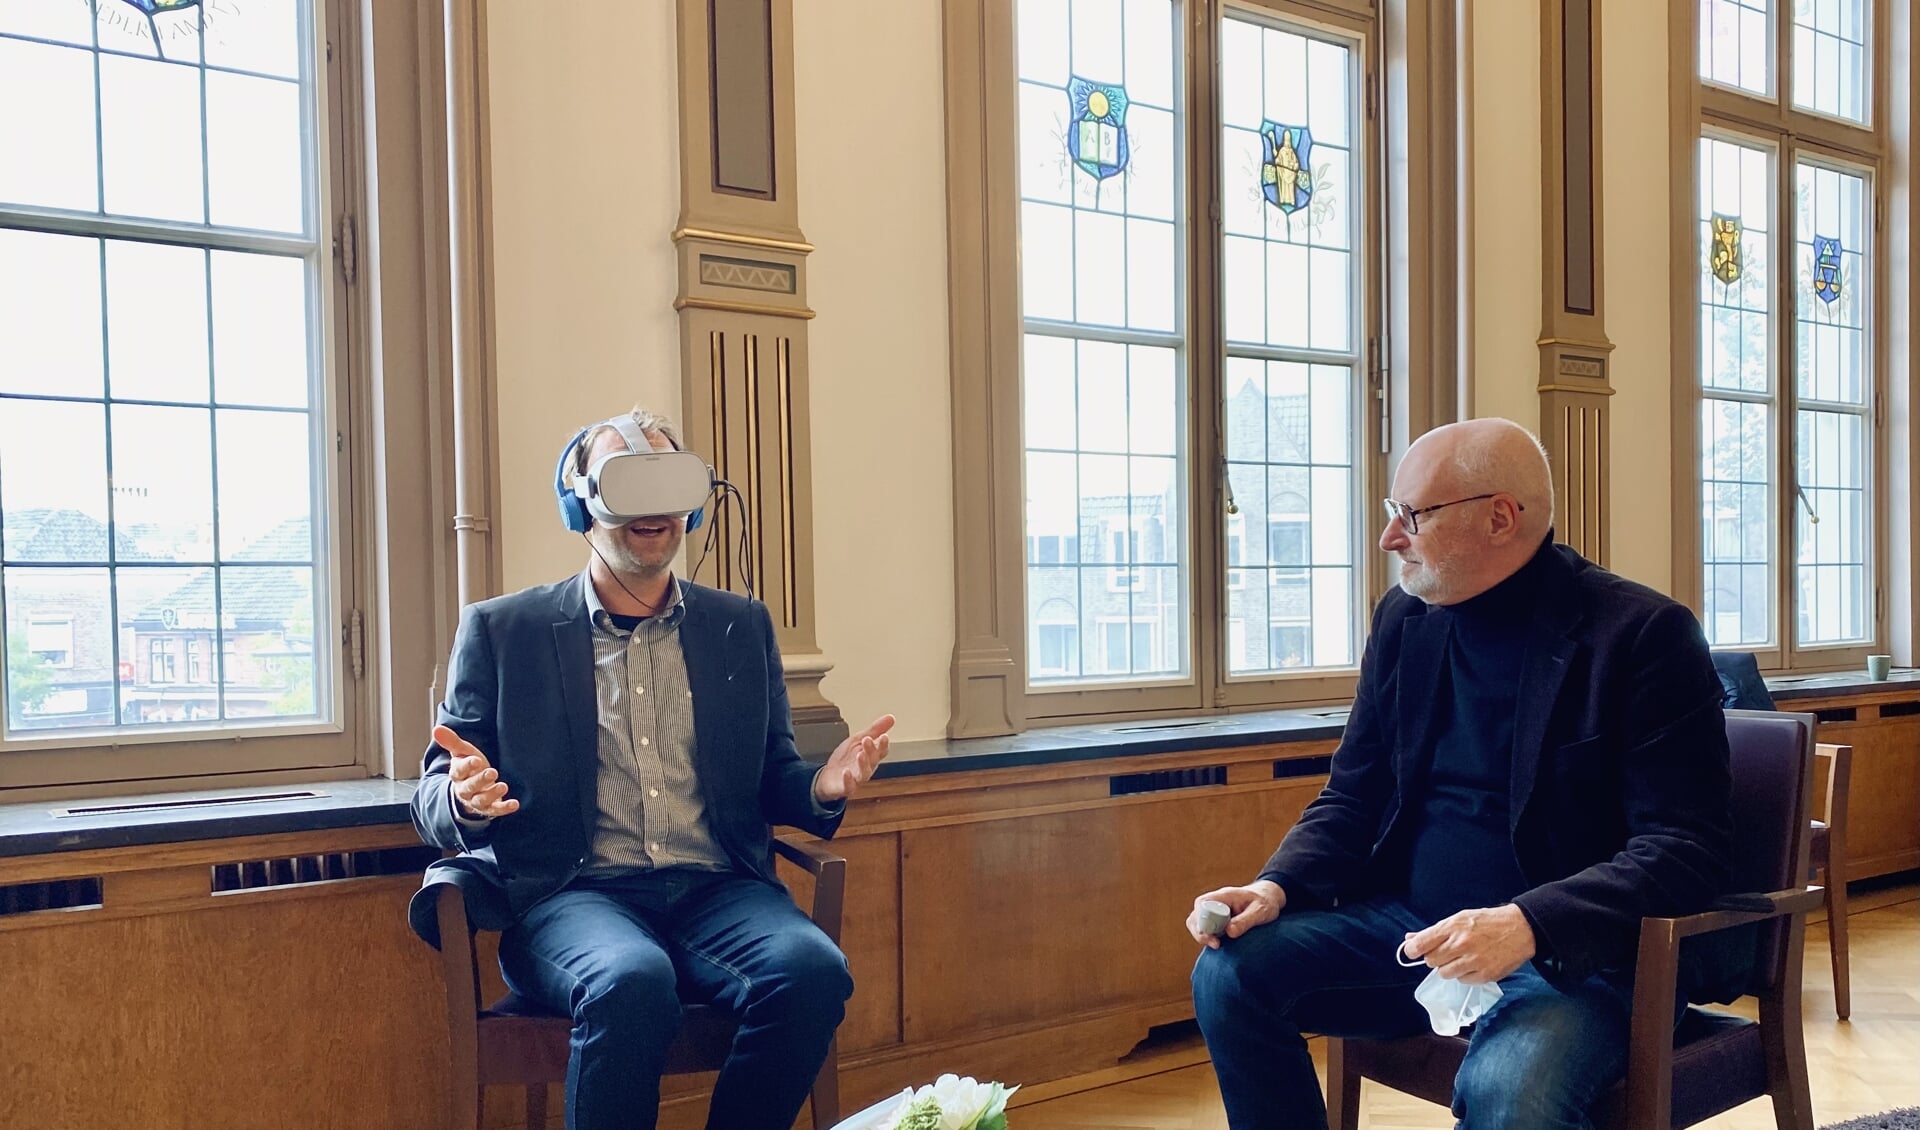 Wethouder Roozendaal probeert de VR-bril uit, vrijwilliger Marcel kijkt toe.